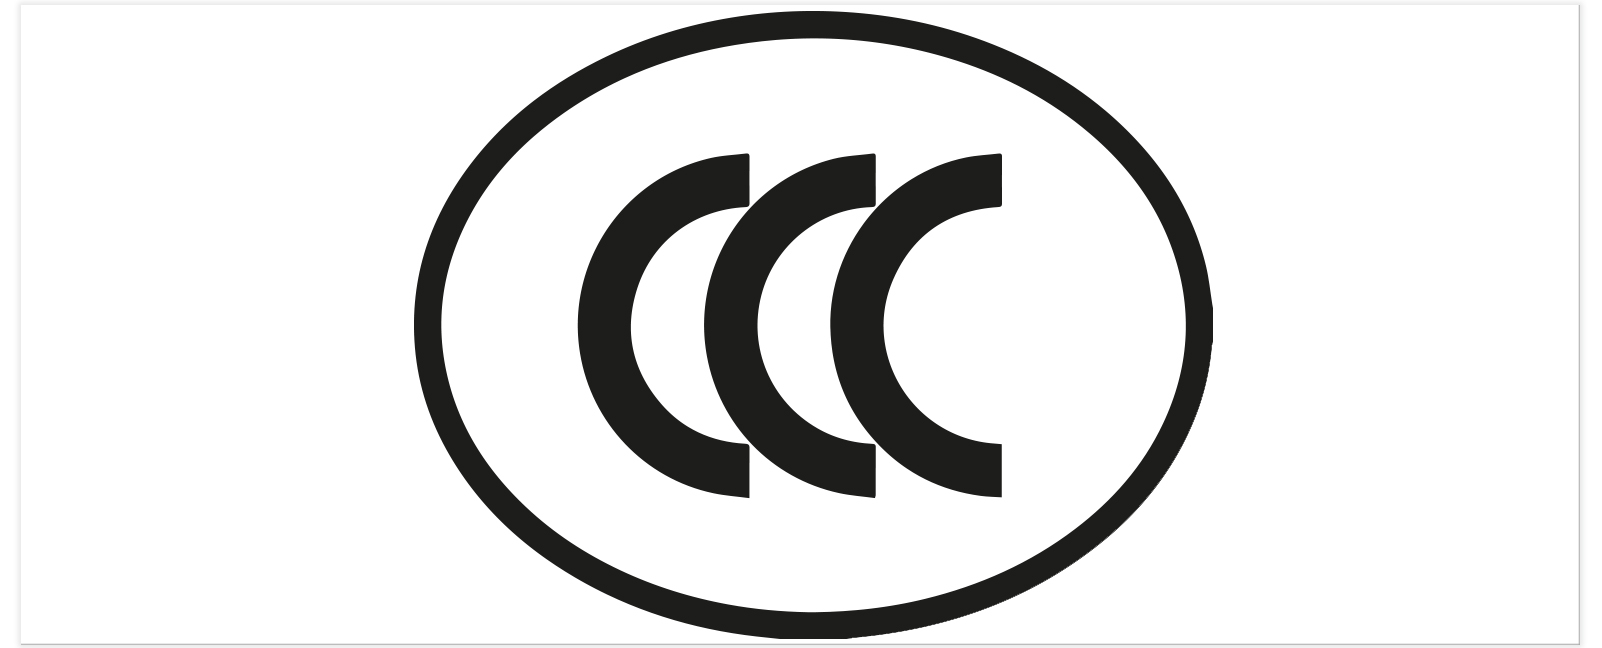 CCC-Zertifizierung für den chinesischen Markt